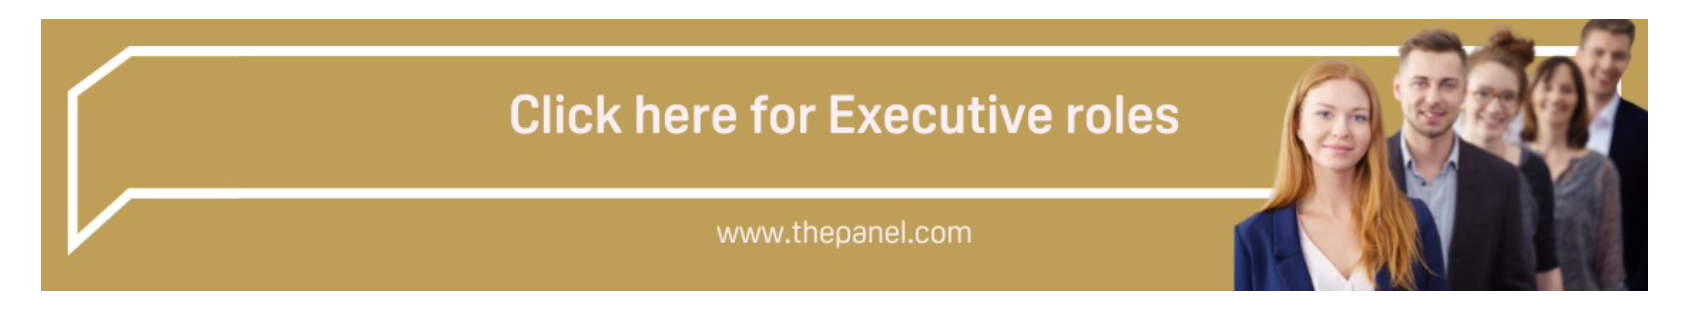 executive roles